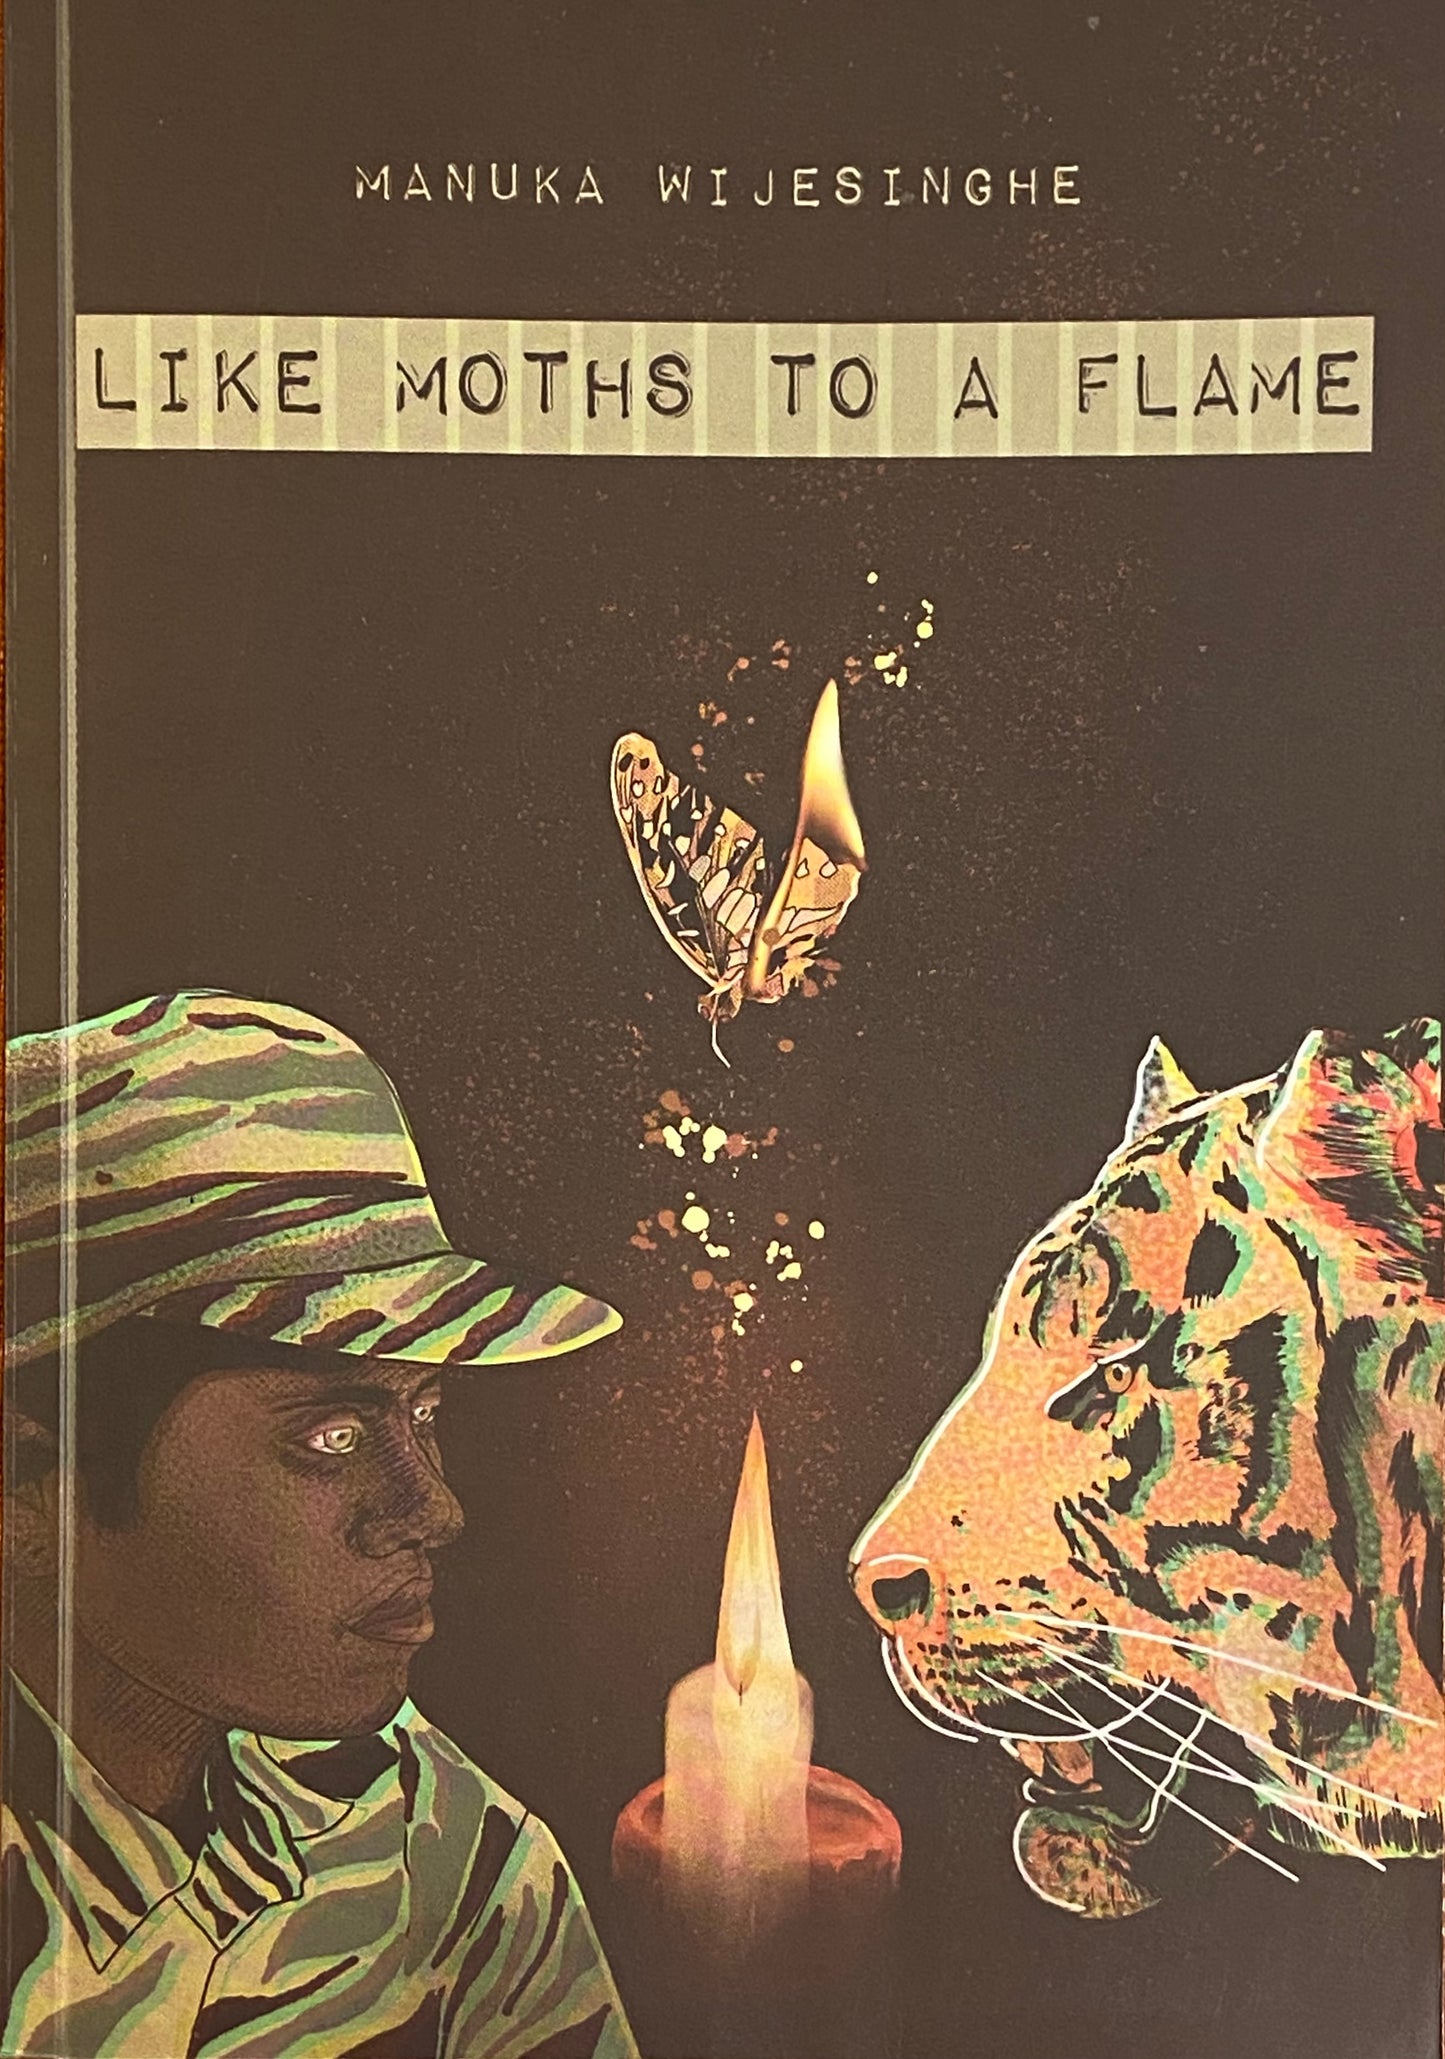 Like a Moths to a Flame by Manuka Wijesinghe